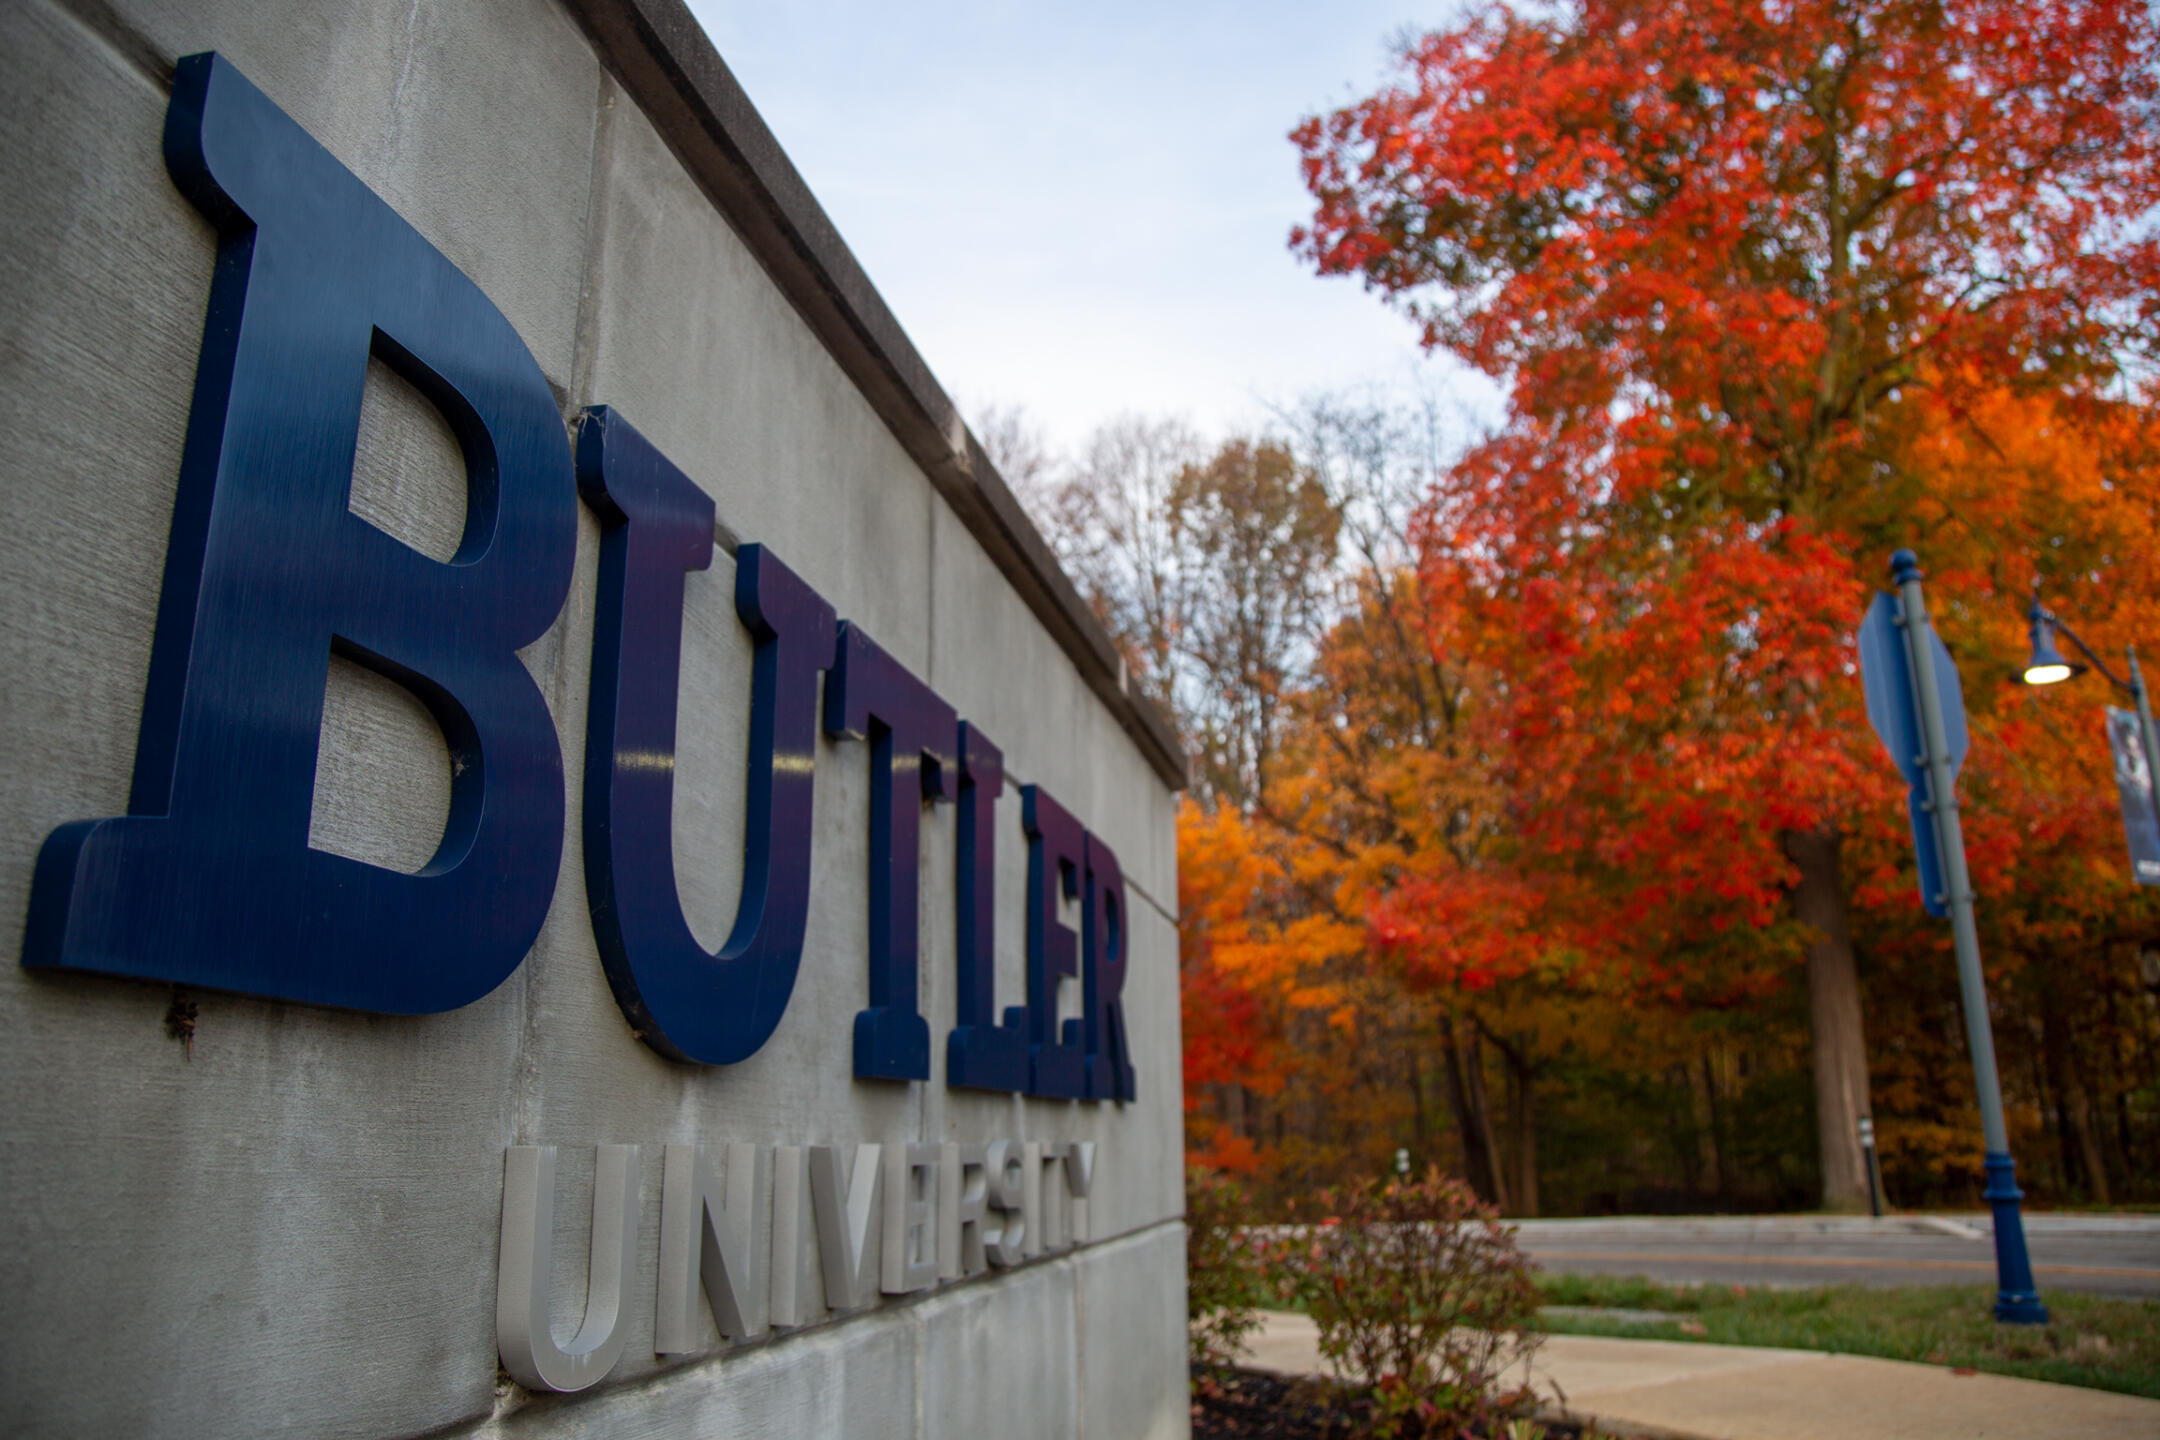 Butler university sign